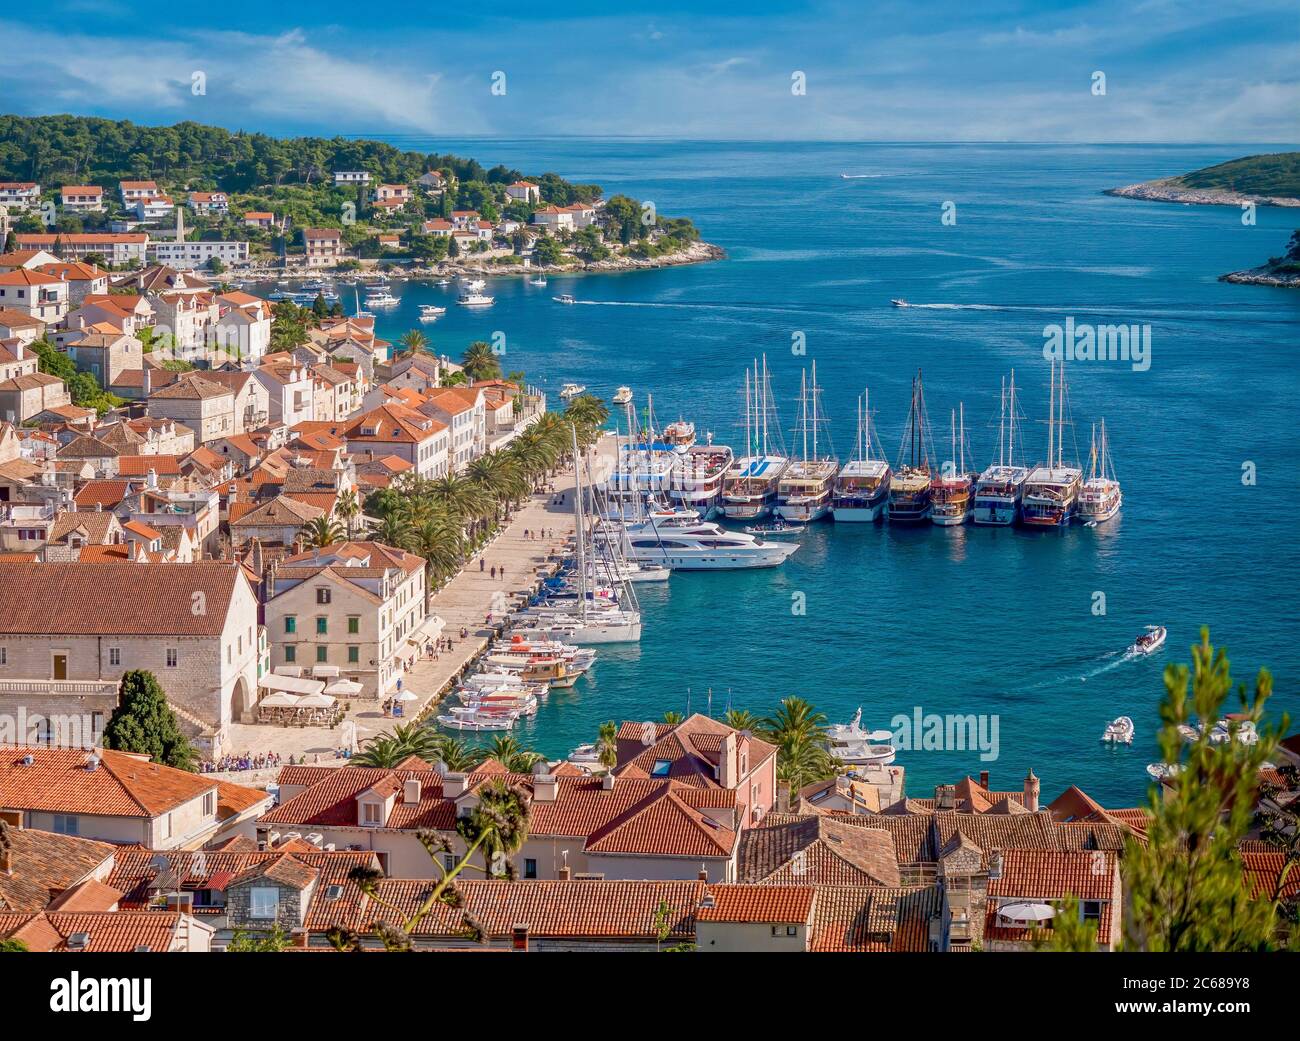 Style de vie de station balnéaire. Surplombant le port de plaisance et le pittoresque front de mer de l'île de Hvar, sur la côte Adriatique en Croatie. Banque D'Images